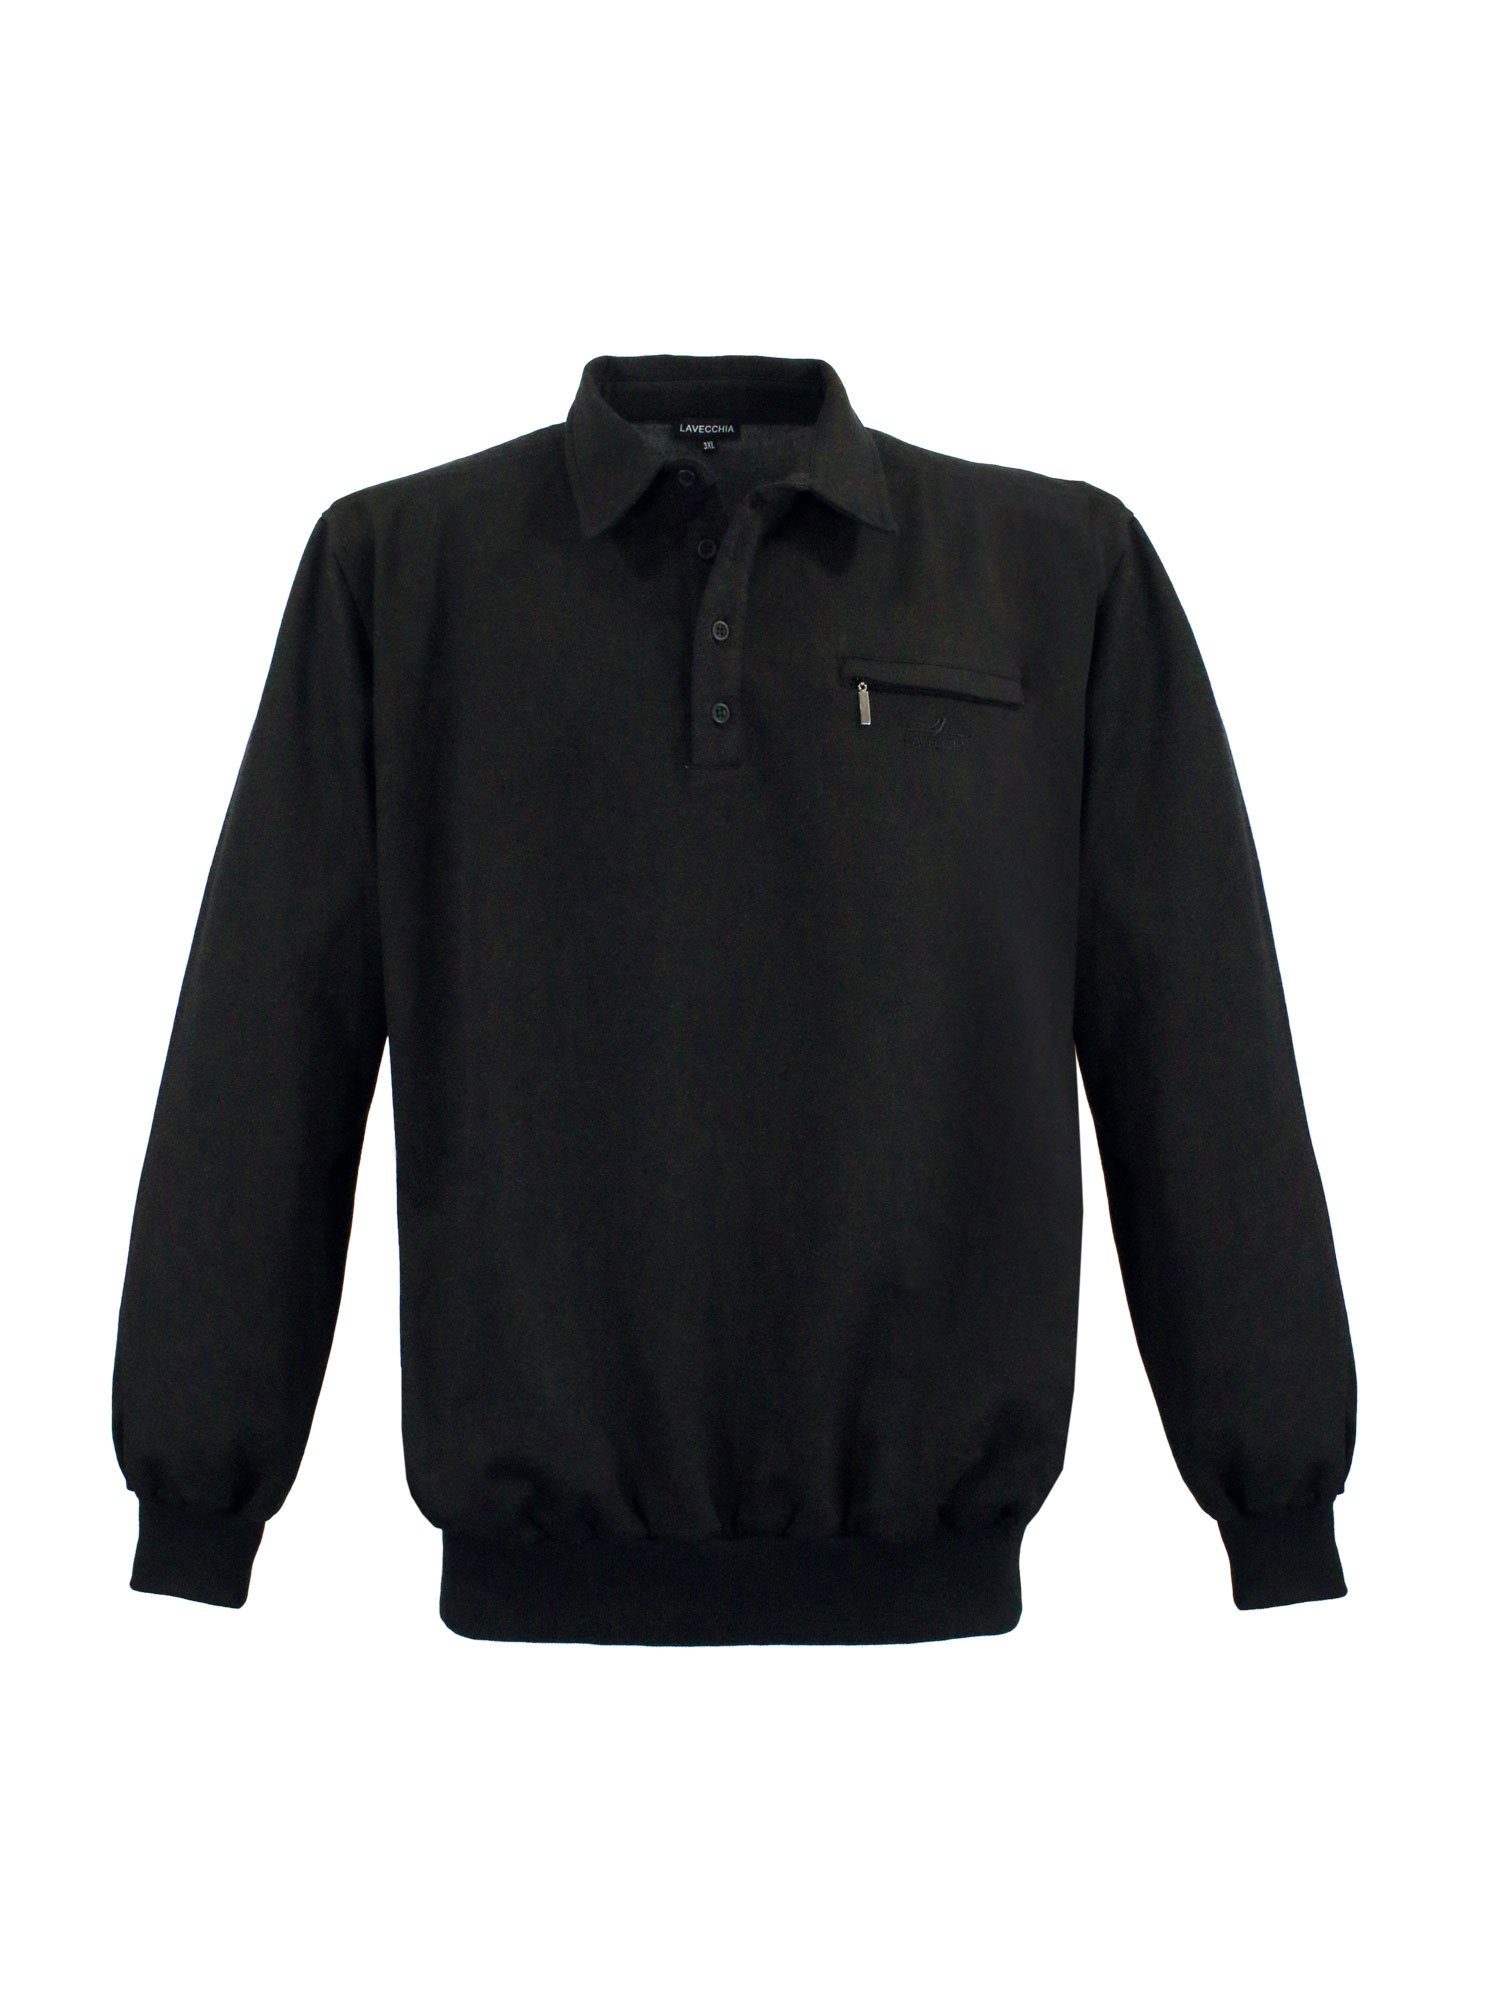 Lavecchia Sweatshirt Übergrößen Sweater LV-705S Sweat Pulli Pullover schwarz